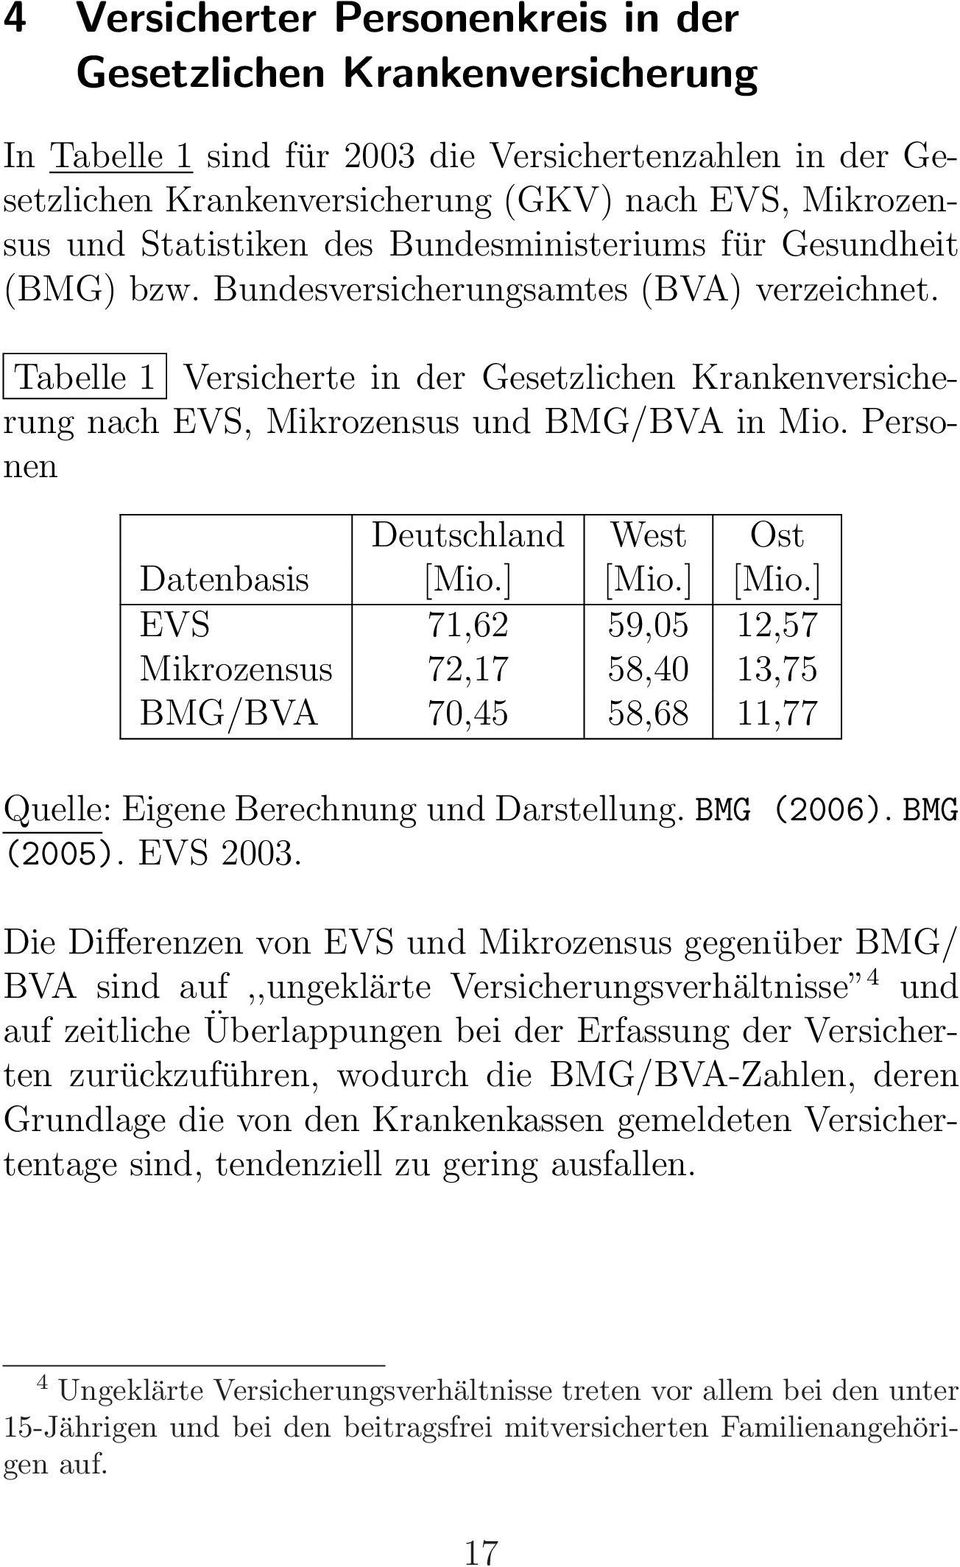 Tabelle 1 Versicherte in der Gesetzlichen Krankenversicherung nach EVS, Mikrozensus und BMG/BVA in Mio. Personen Deutschland West Ost Datenbasis [Mio.] [Mio.